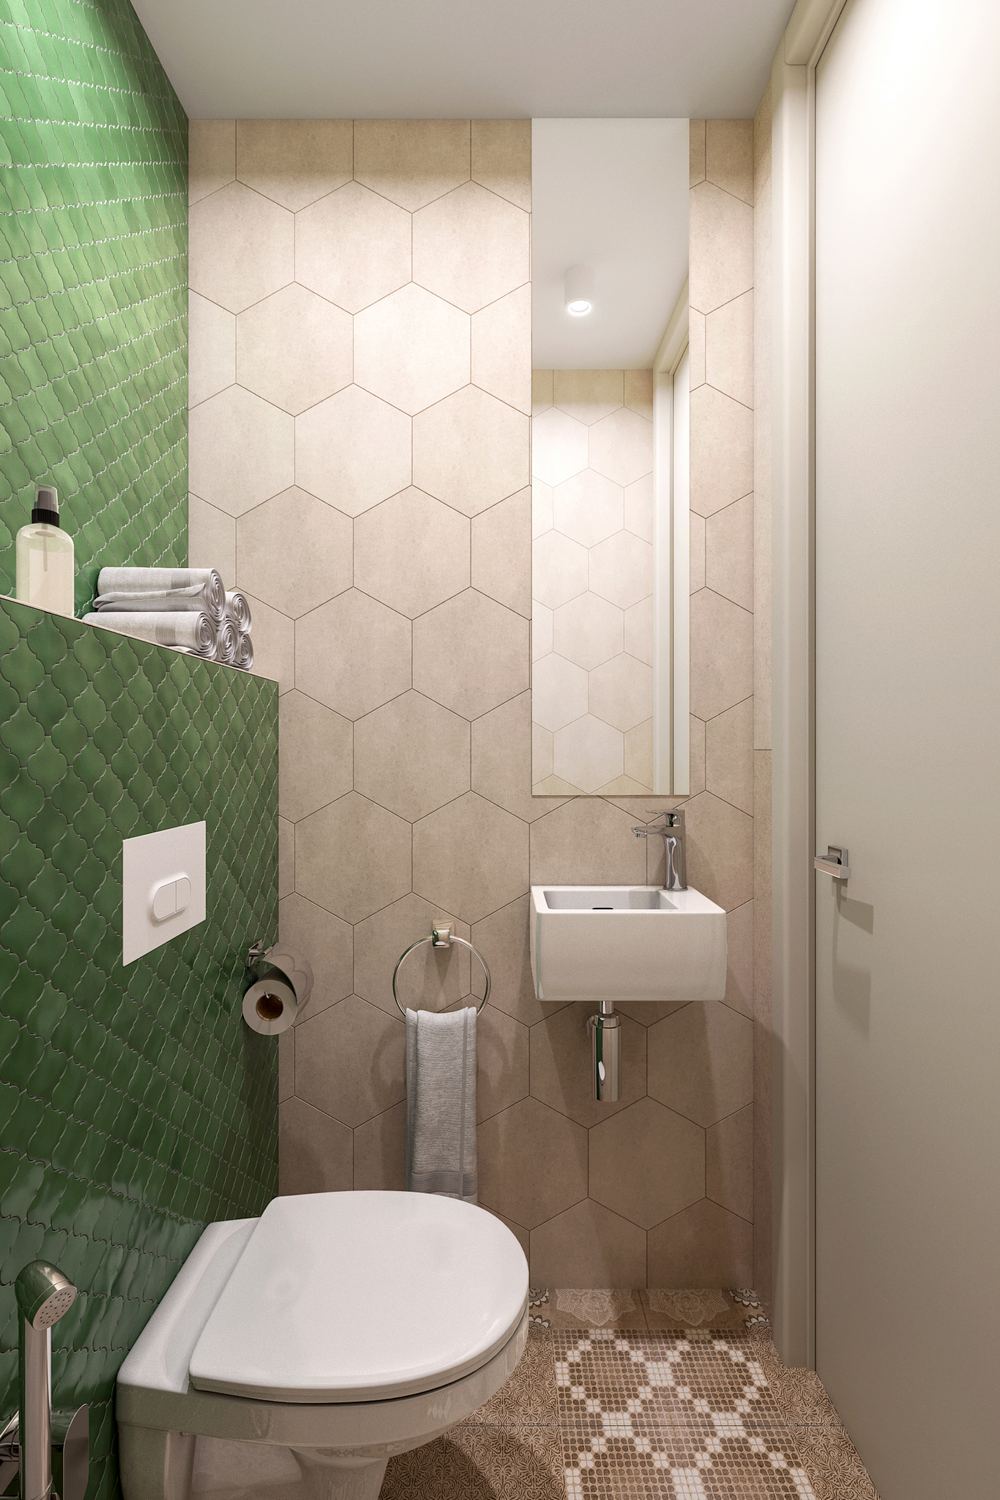 A bézs csempe a falon nagyobb méretű hatszögletű lapokból áll, a WC mögött a fal zöld, kisebb formátumú csempét kapott mutatós formával, a padlóburkolat mintás, a szaniterek fehérek